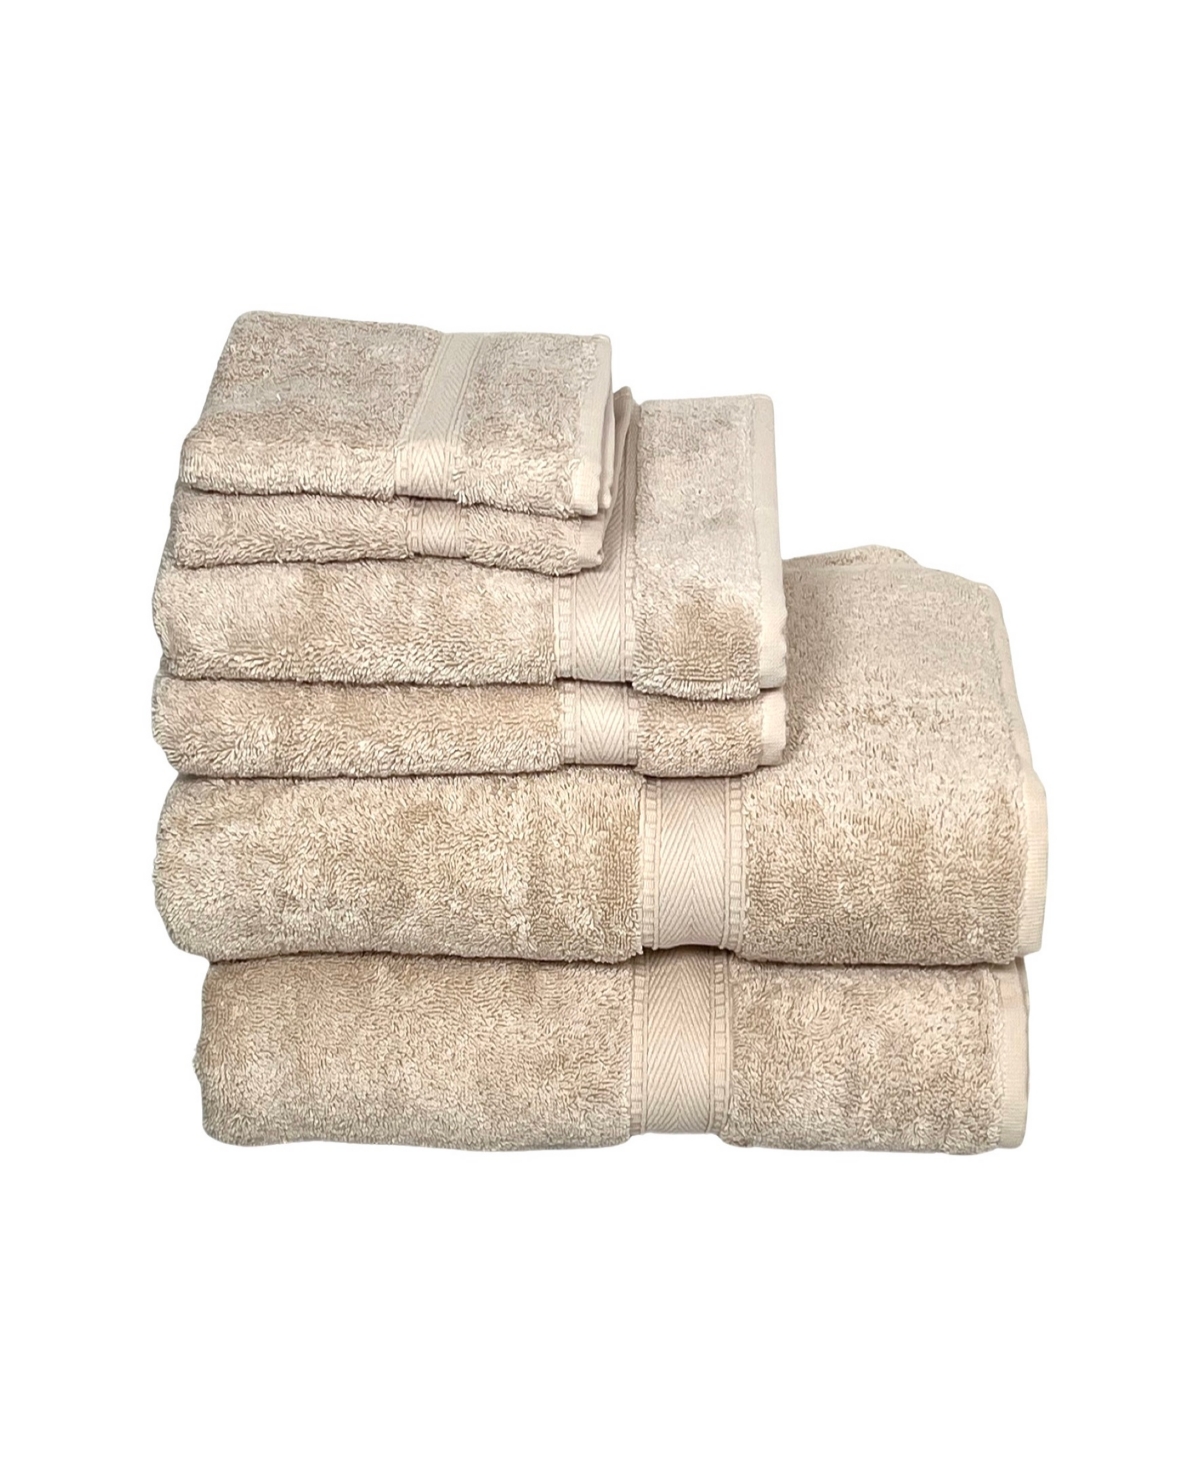 Ozan Premium Home Legend Collection 6 Piece Turkish Cotton Luxury Towel Set Bedding In Beige